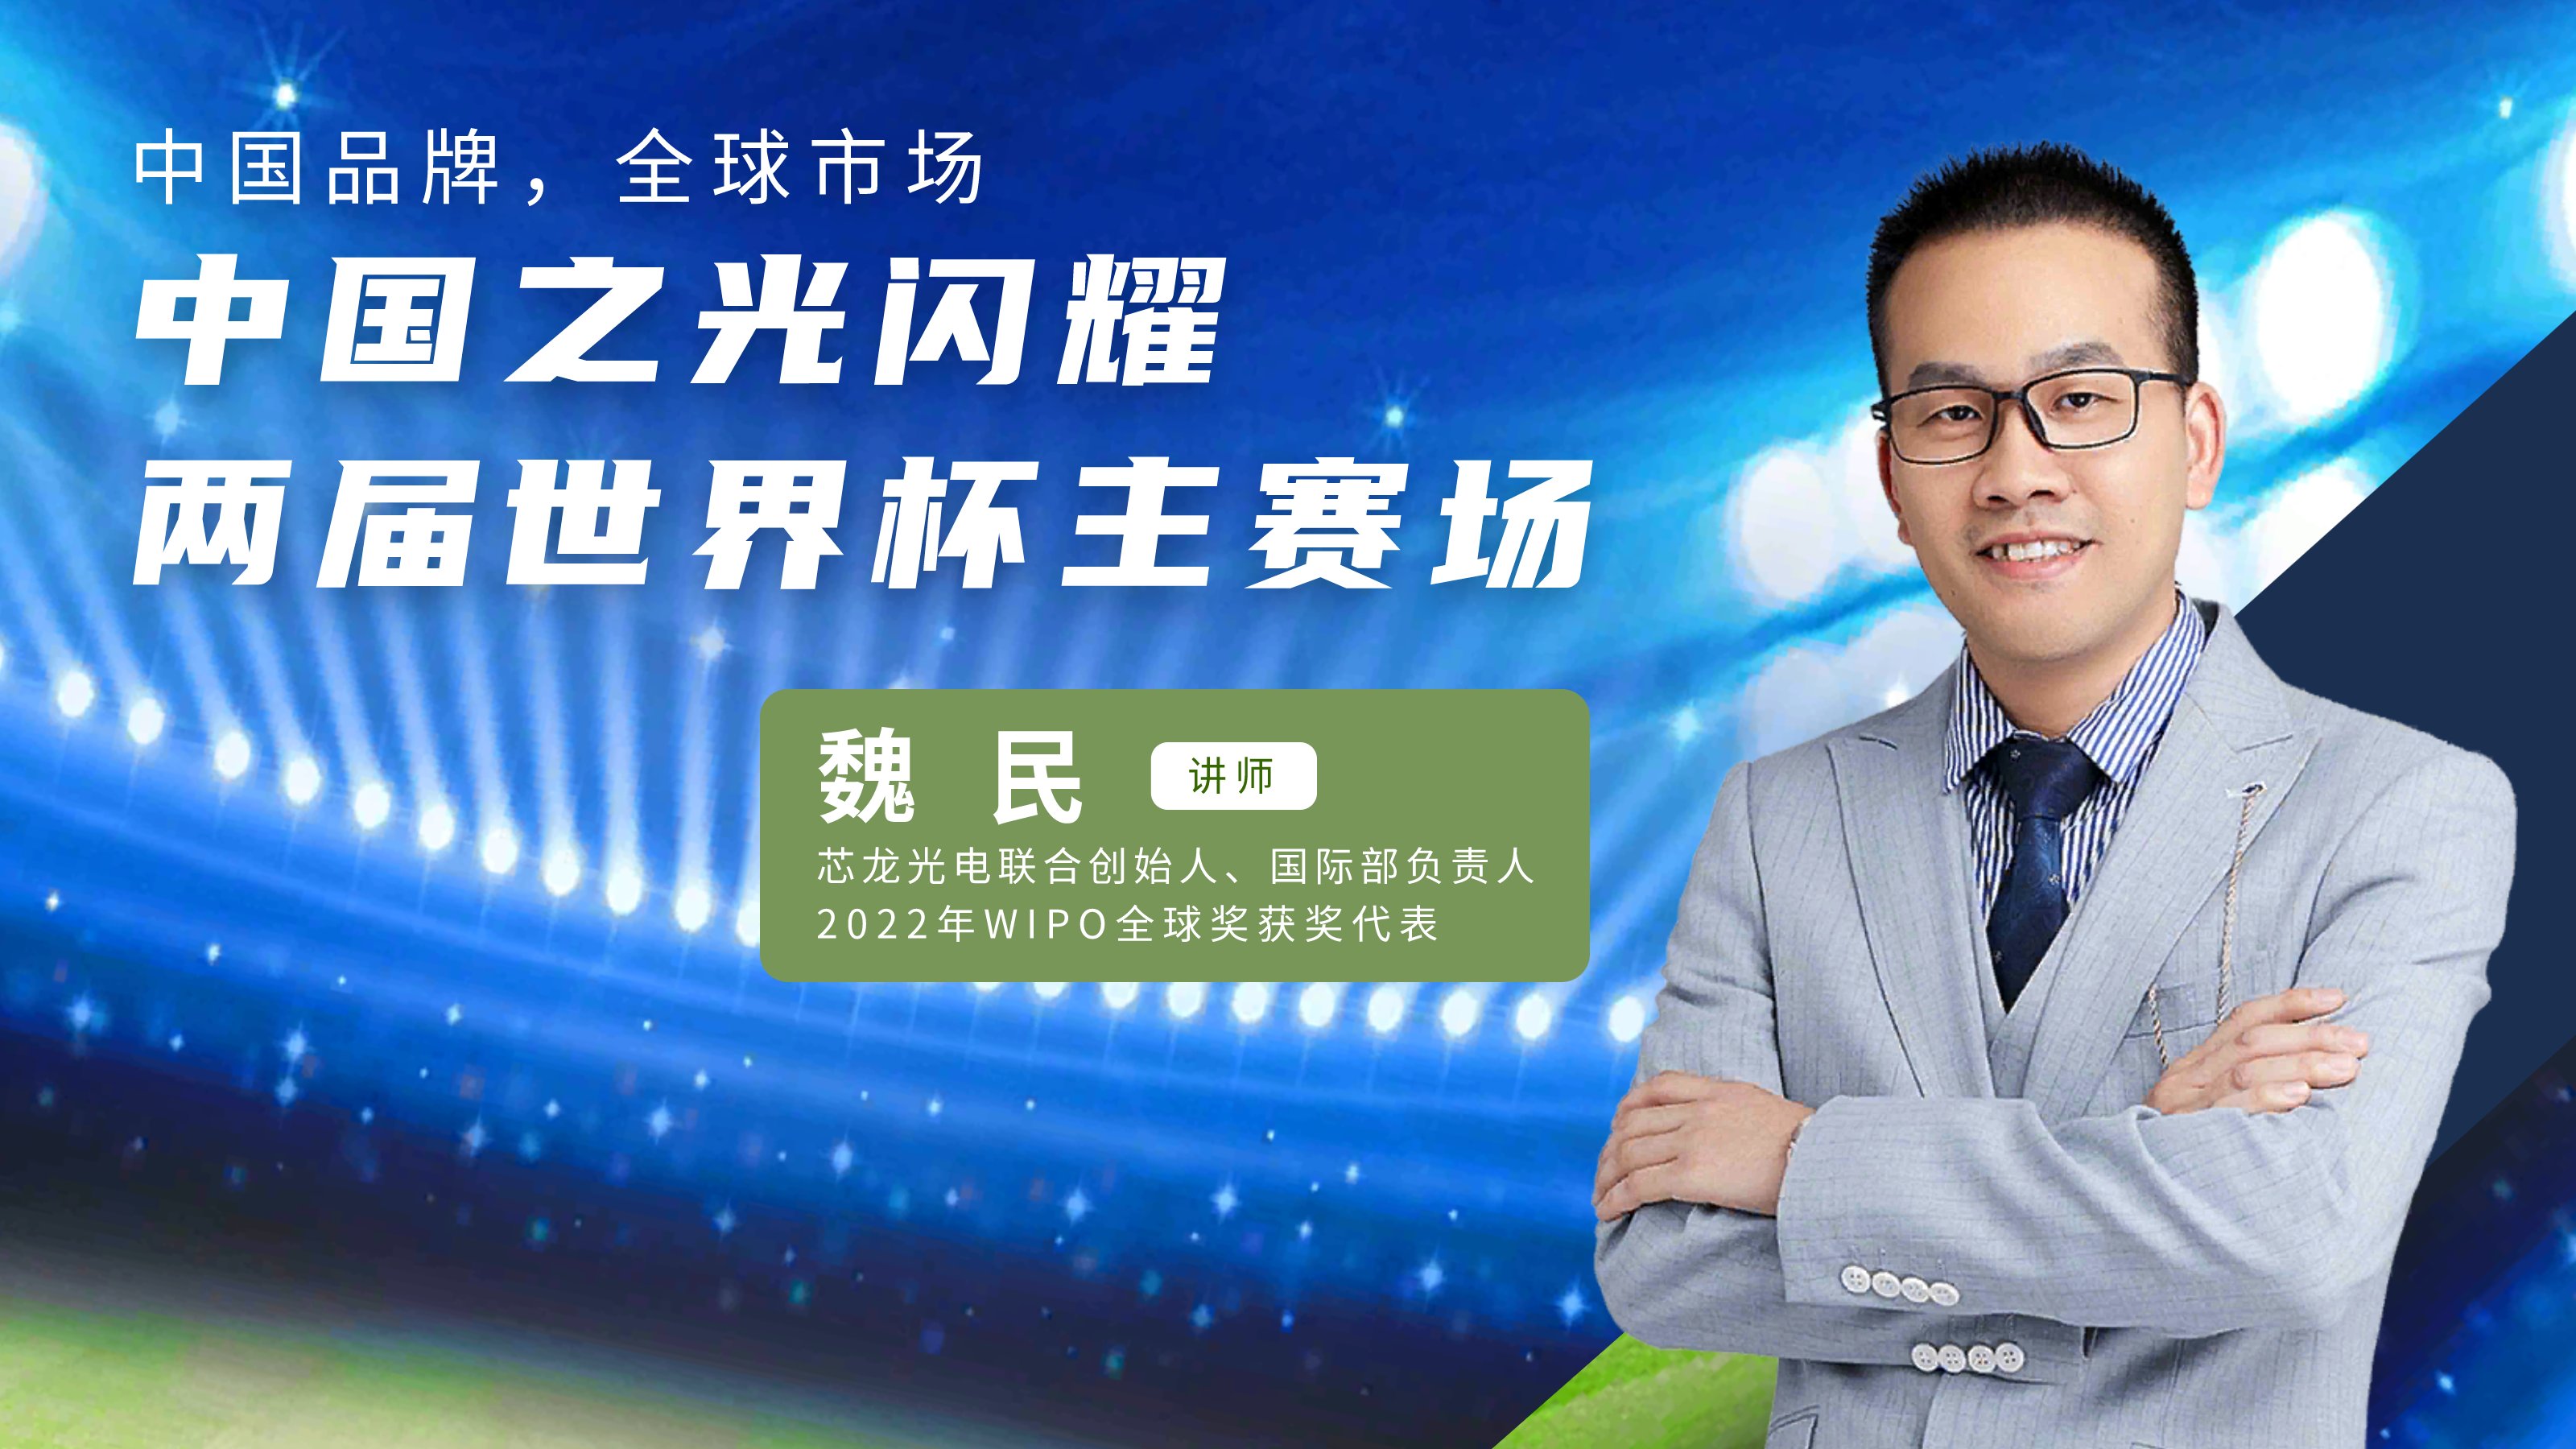 下午2点直播  明人在线——魏民老师带你领略中国照明如何闪耀世界杯